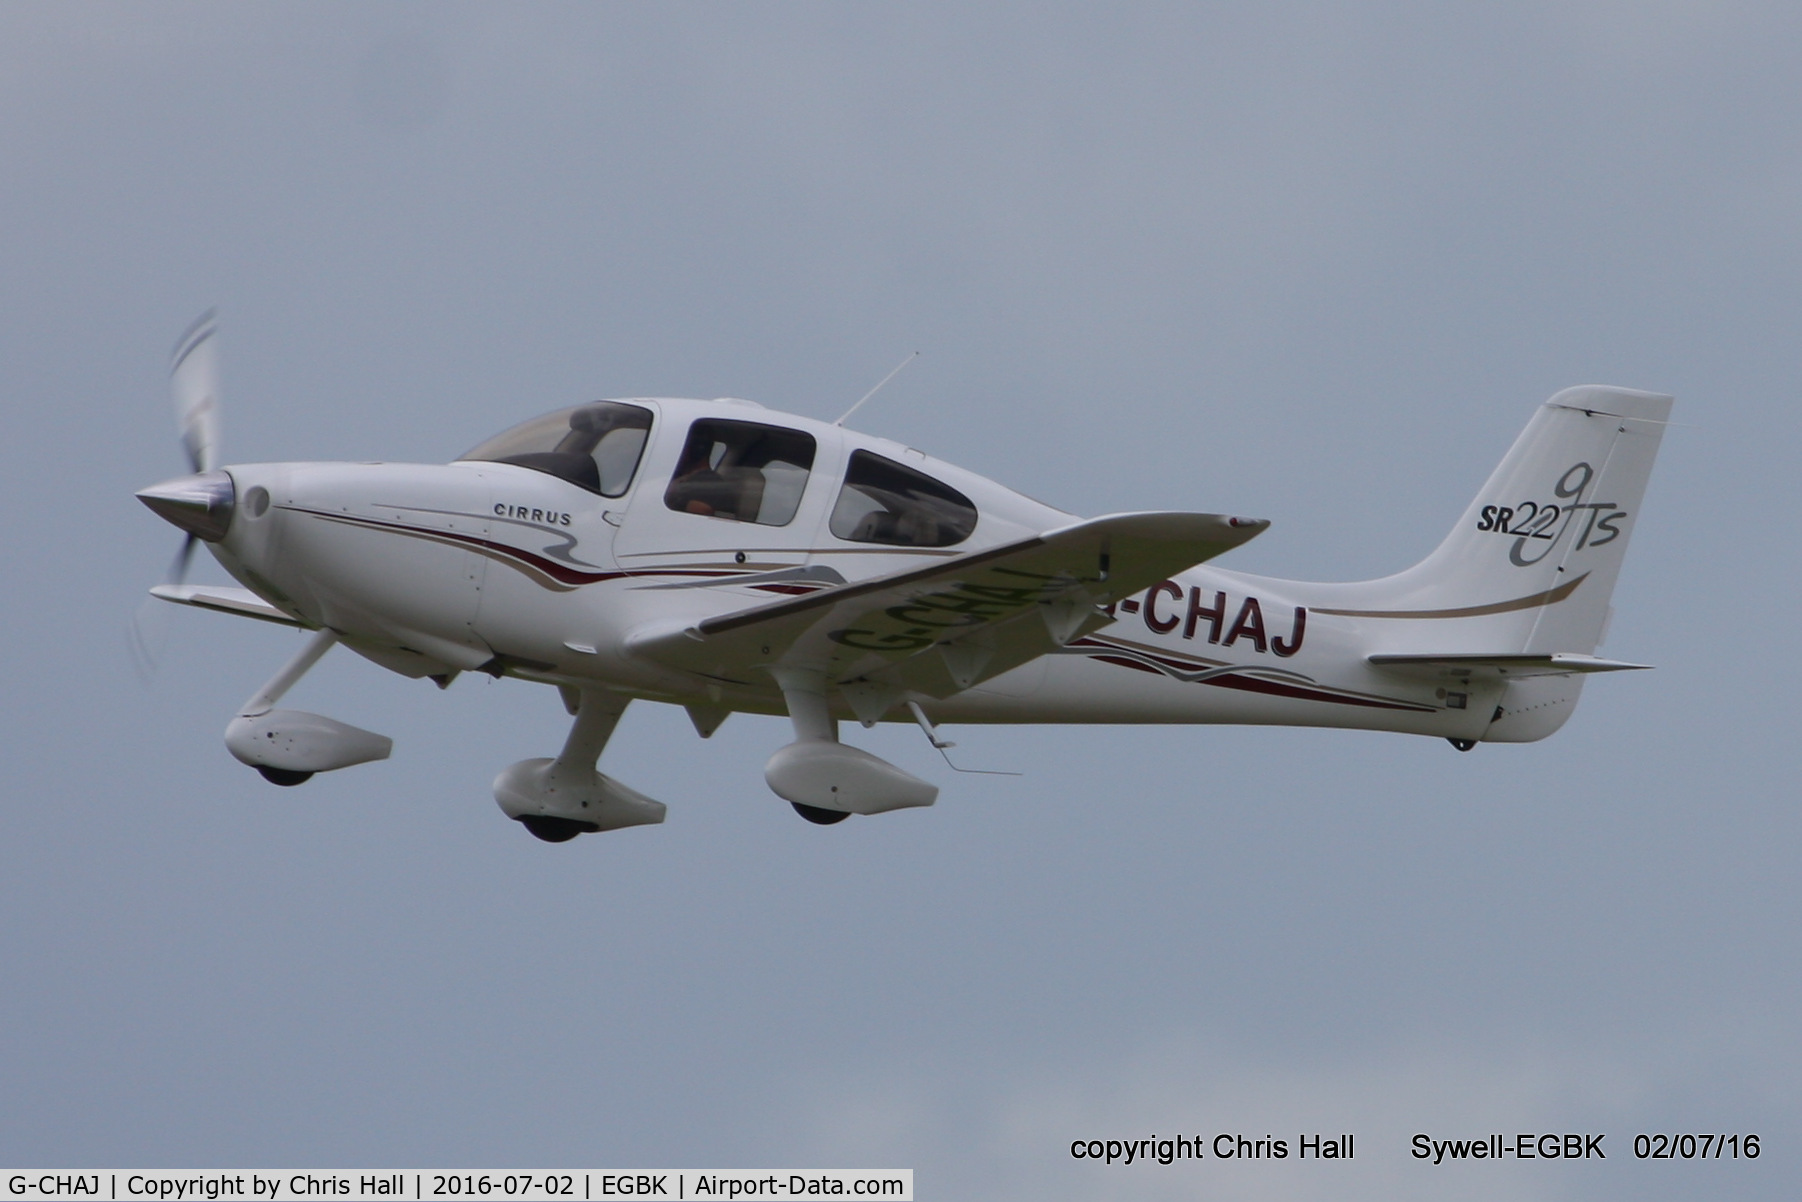 G-CHAJ, 2004 Cirrus SR22 GTS C/N 1057, at Aeroexpo 2016